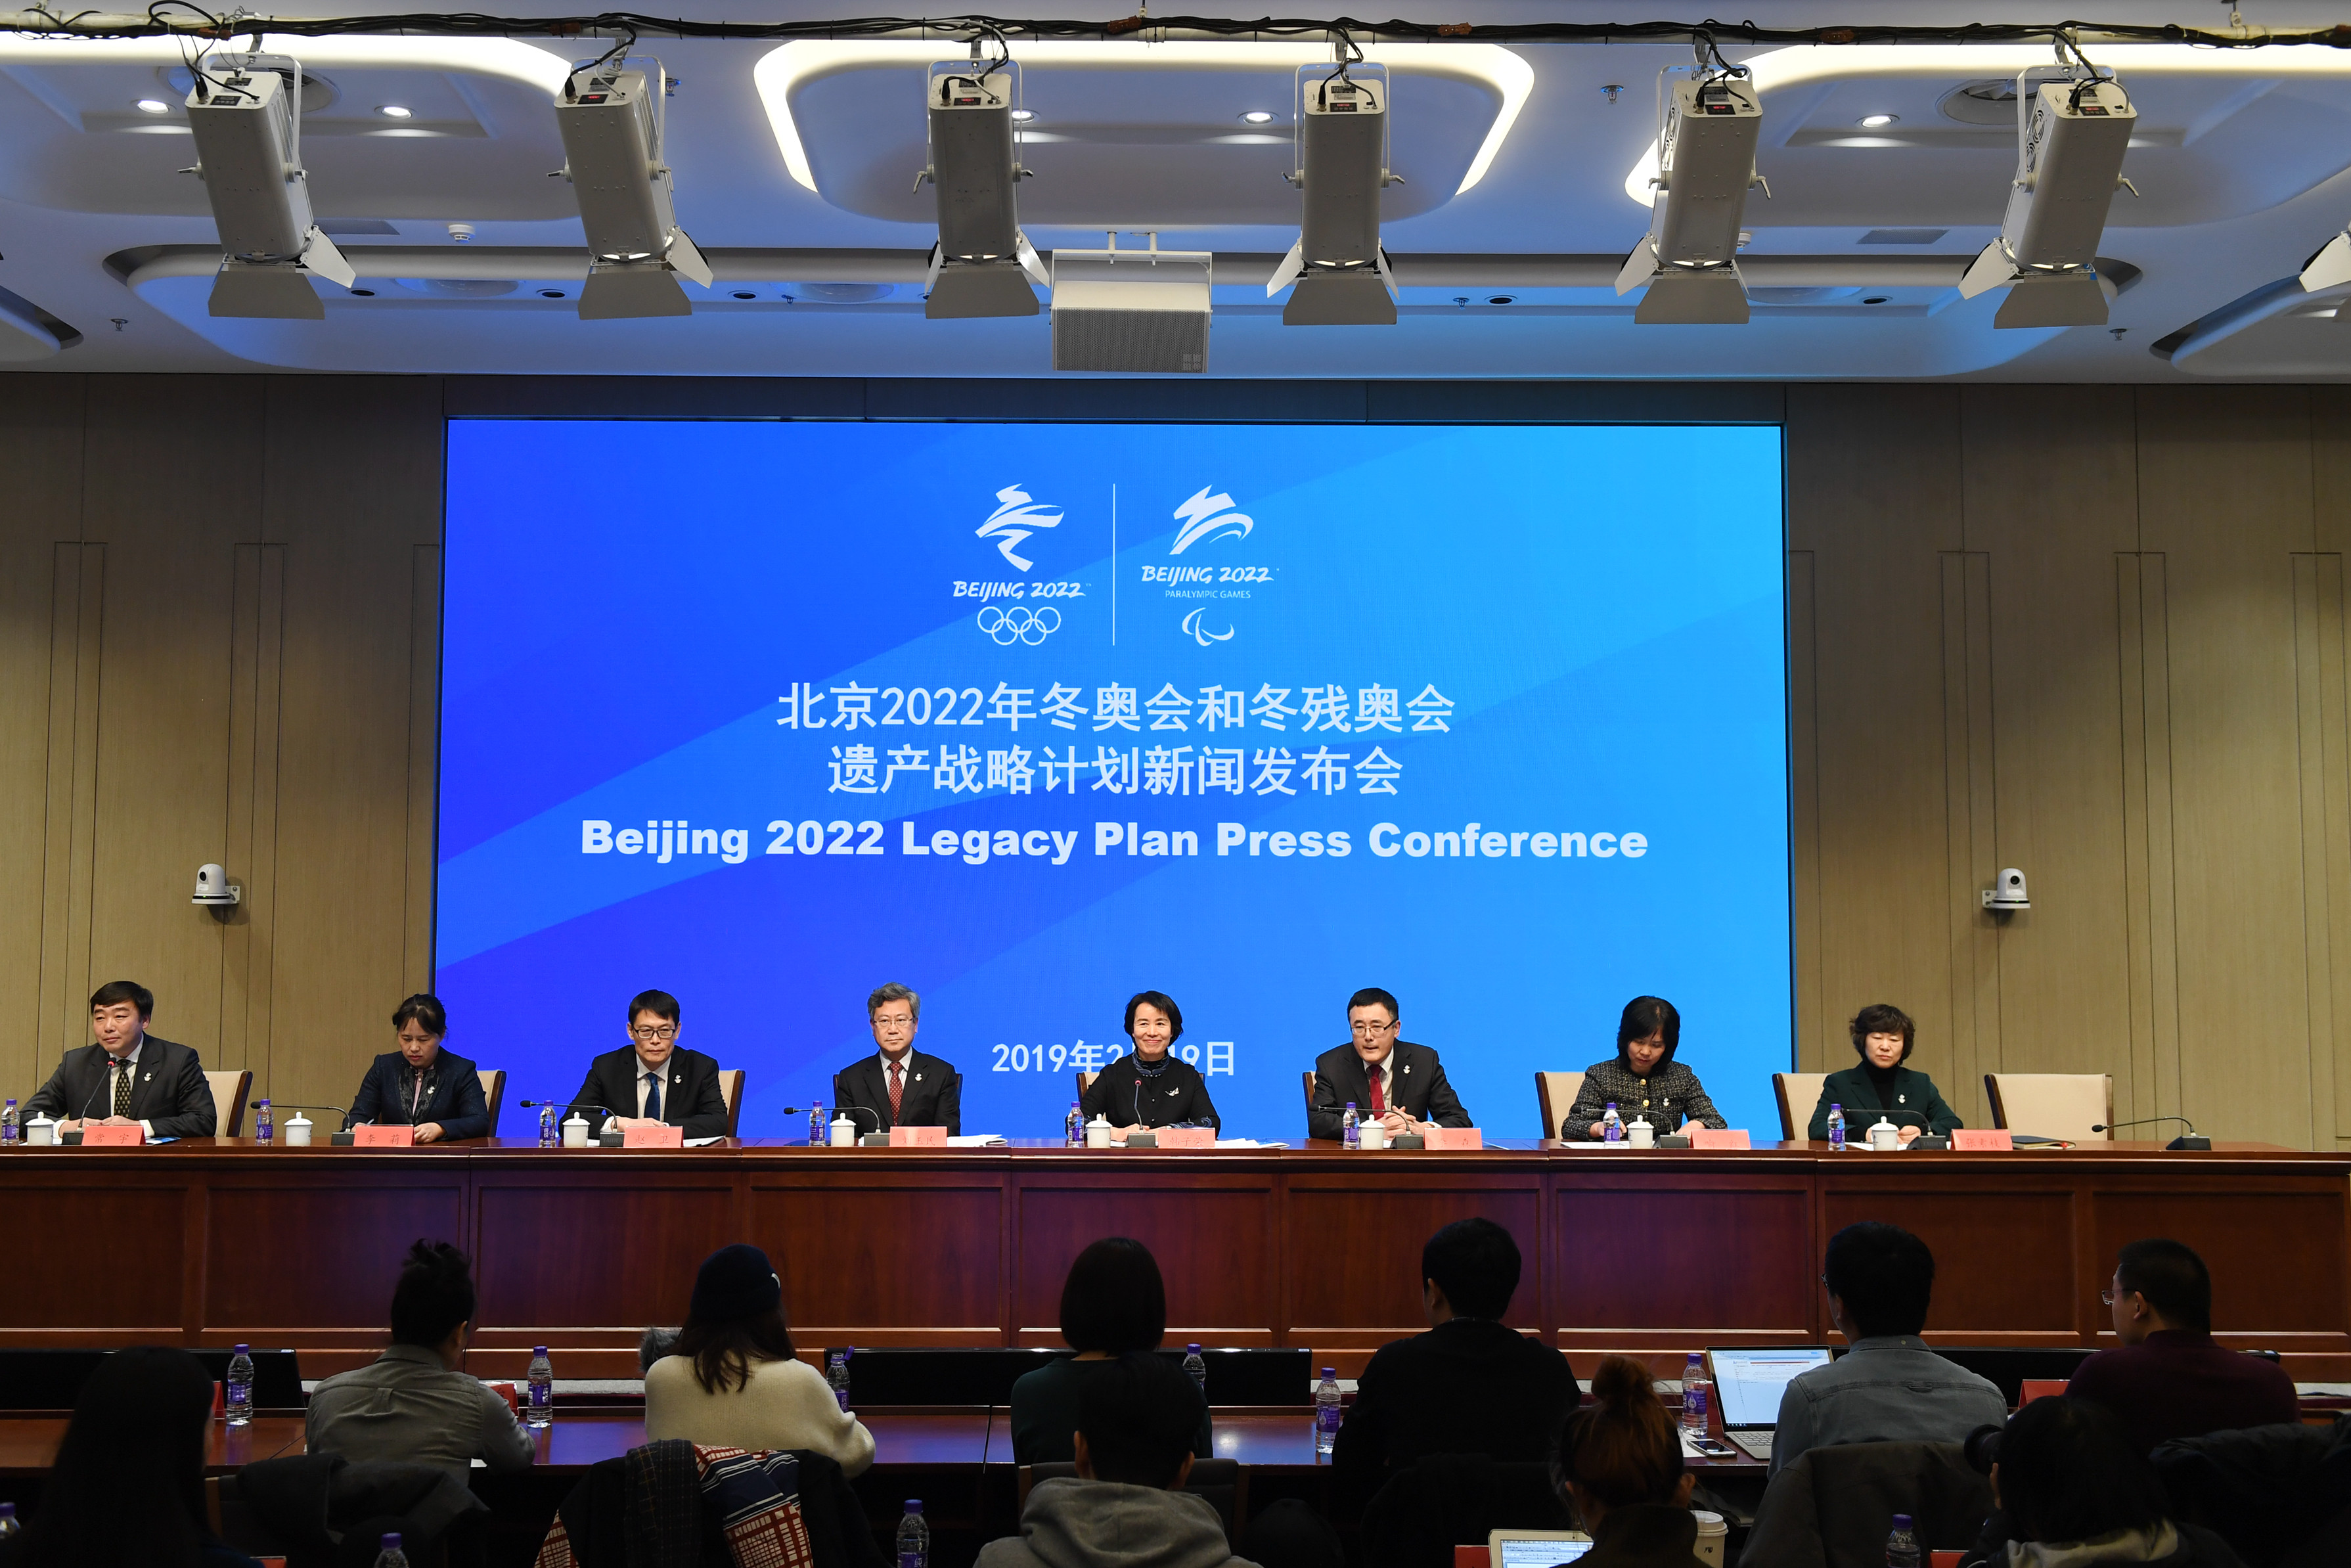 北京2022年冬奥会和冬残奥会遗产战略计划新闻发布会在京举行(1)